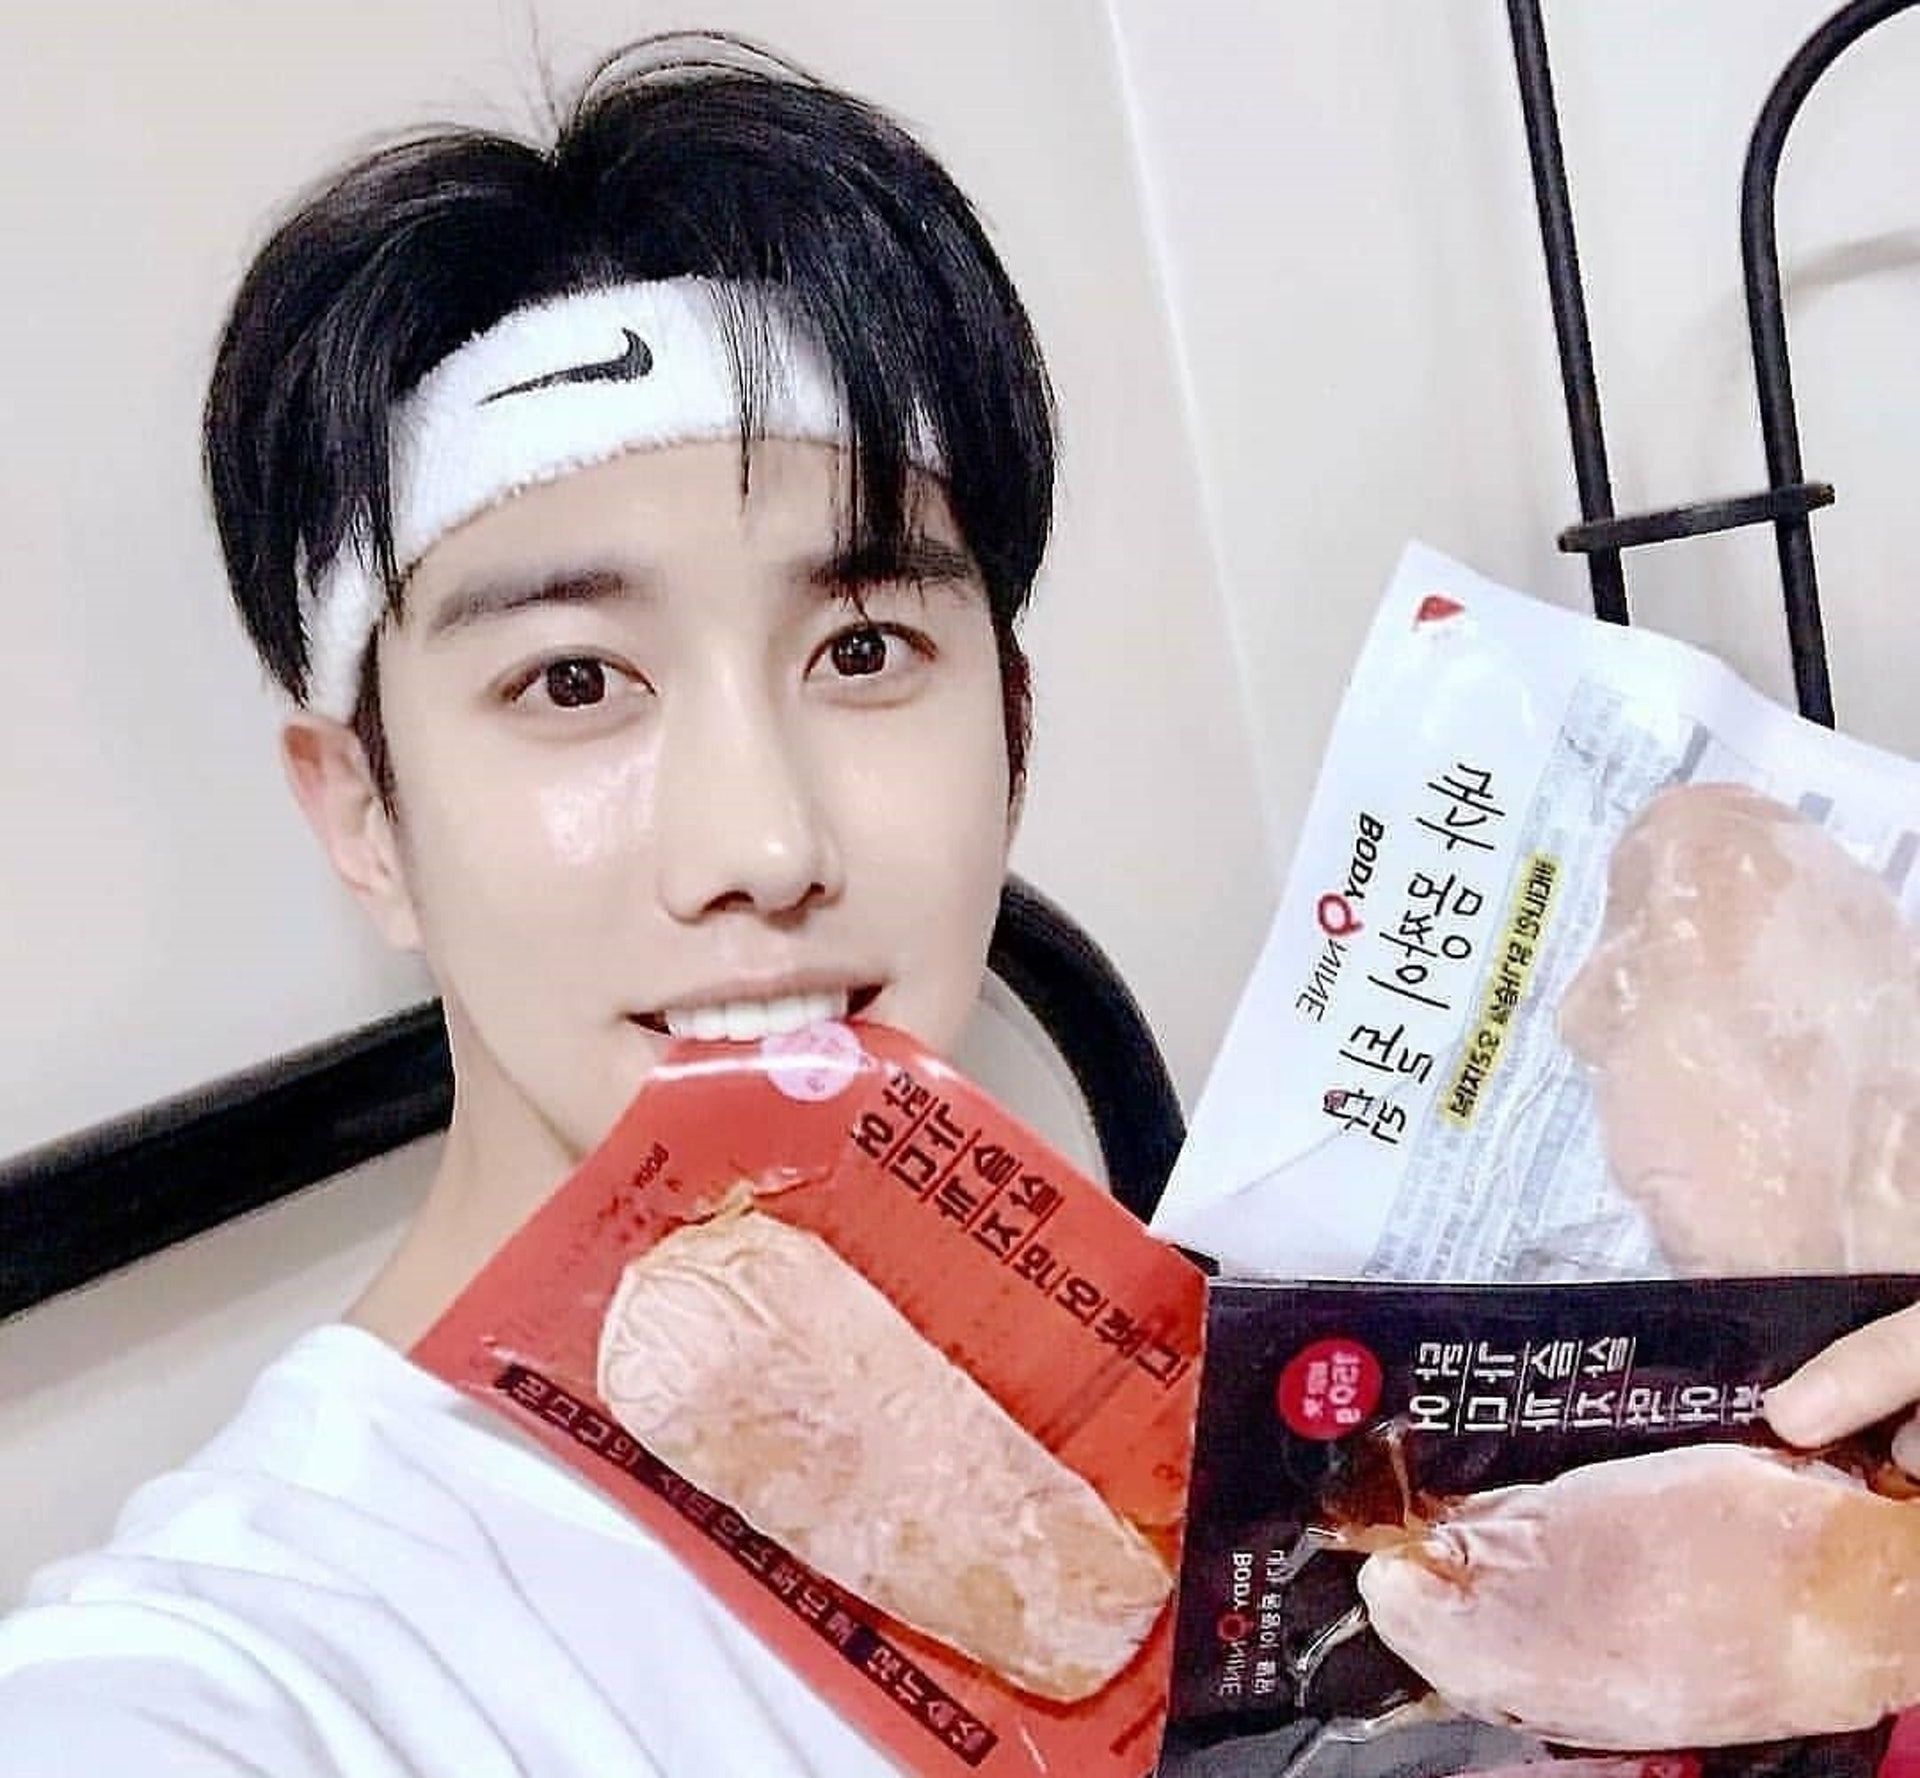 即食雞胸肉】韓國人氣即食雞胸低卡低脂香港製無激素新品邊款較好？